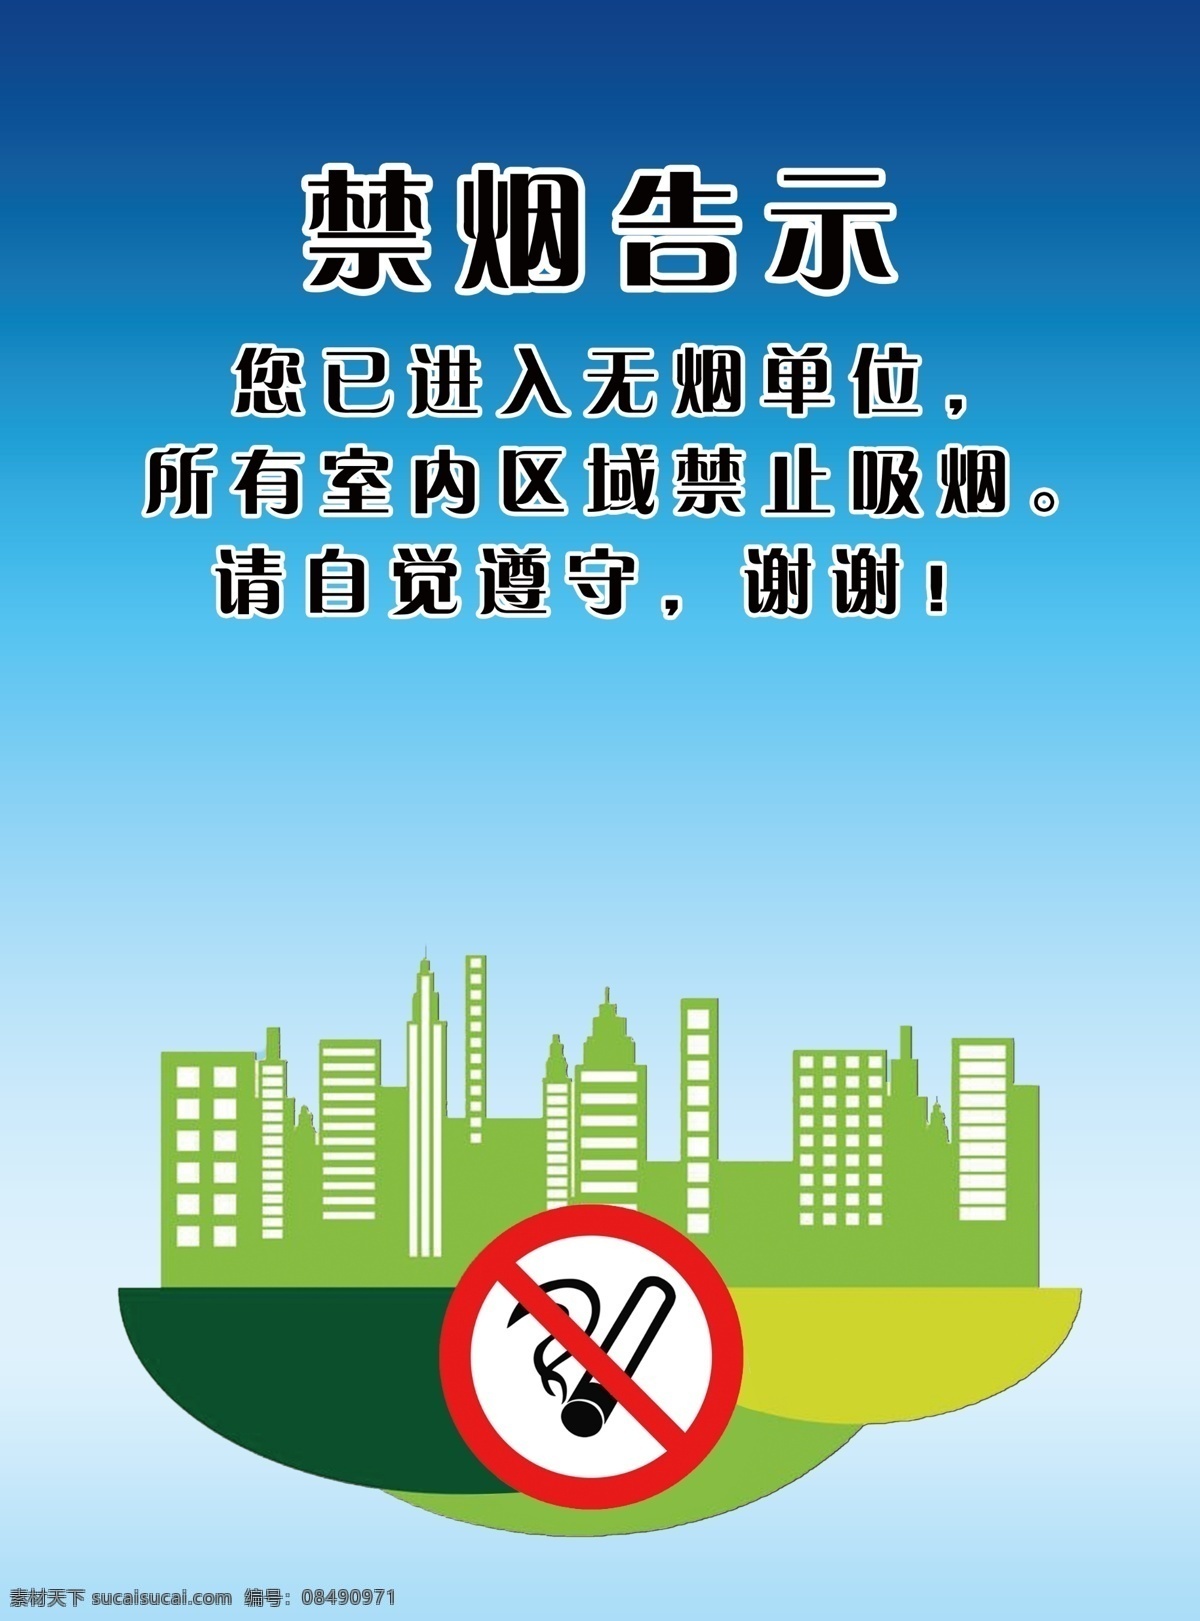 禁烟告示 无烟单位 禁烟标识 拒绝吸烟 珍爱生活 绿色展板